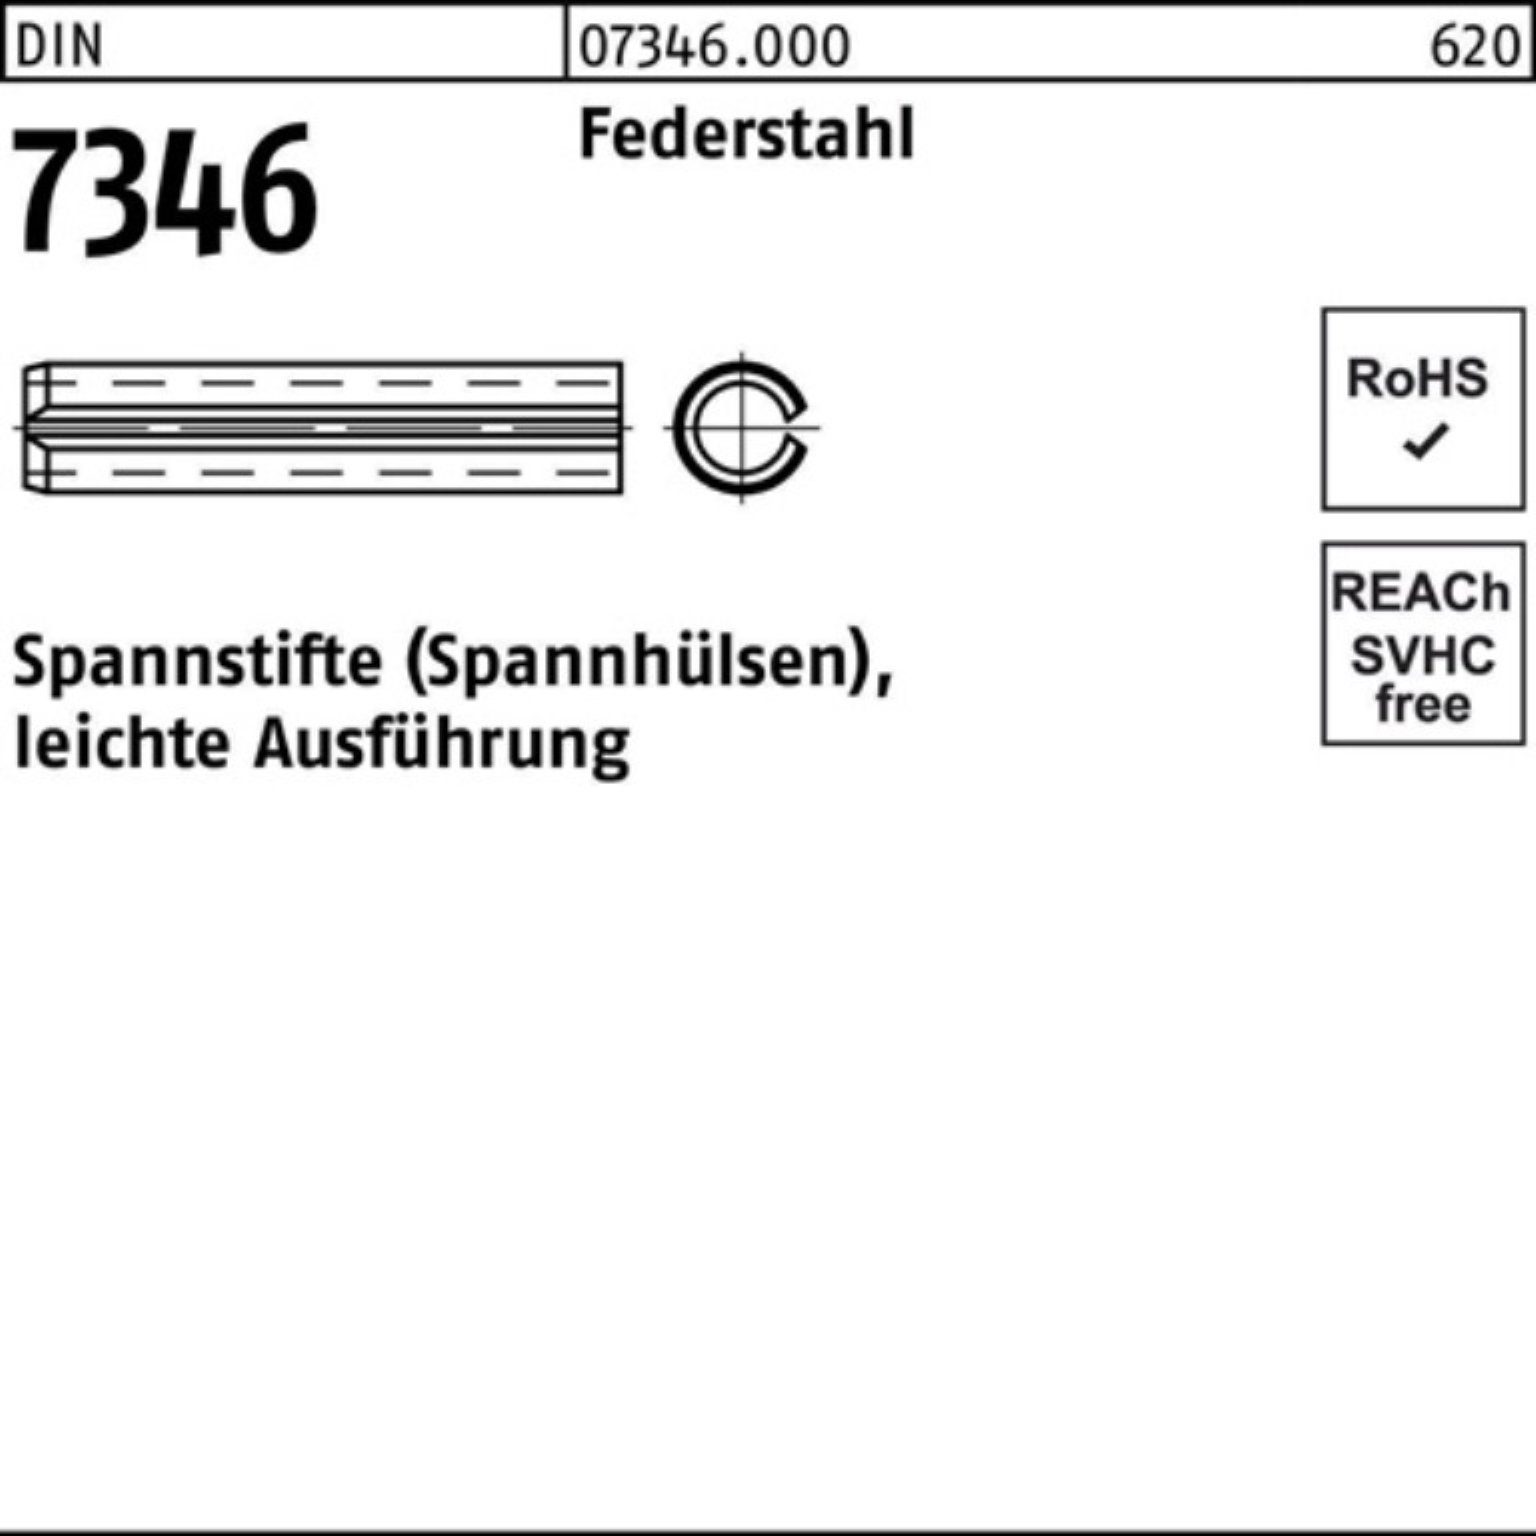 Pack Spannstift leichte 20 Reyher 100er DIN 10x 13337 Spannstift Federstahl 7346/ISO Aus